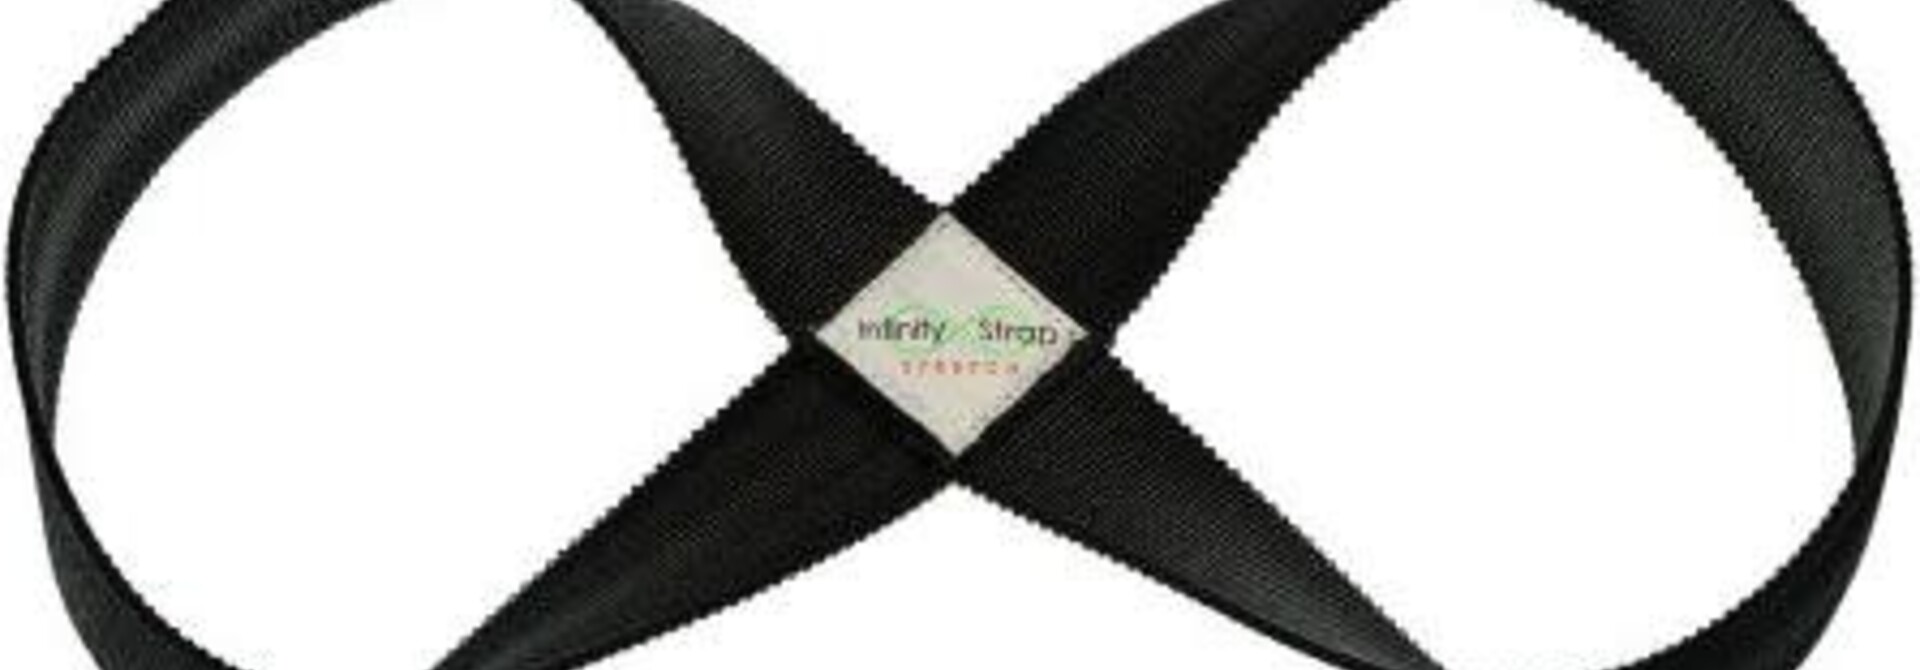 Infinity Strap Stretch - Onyx